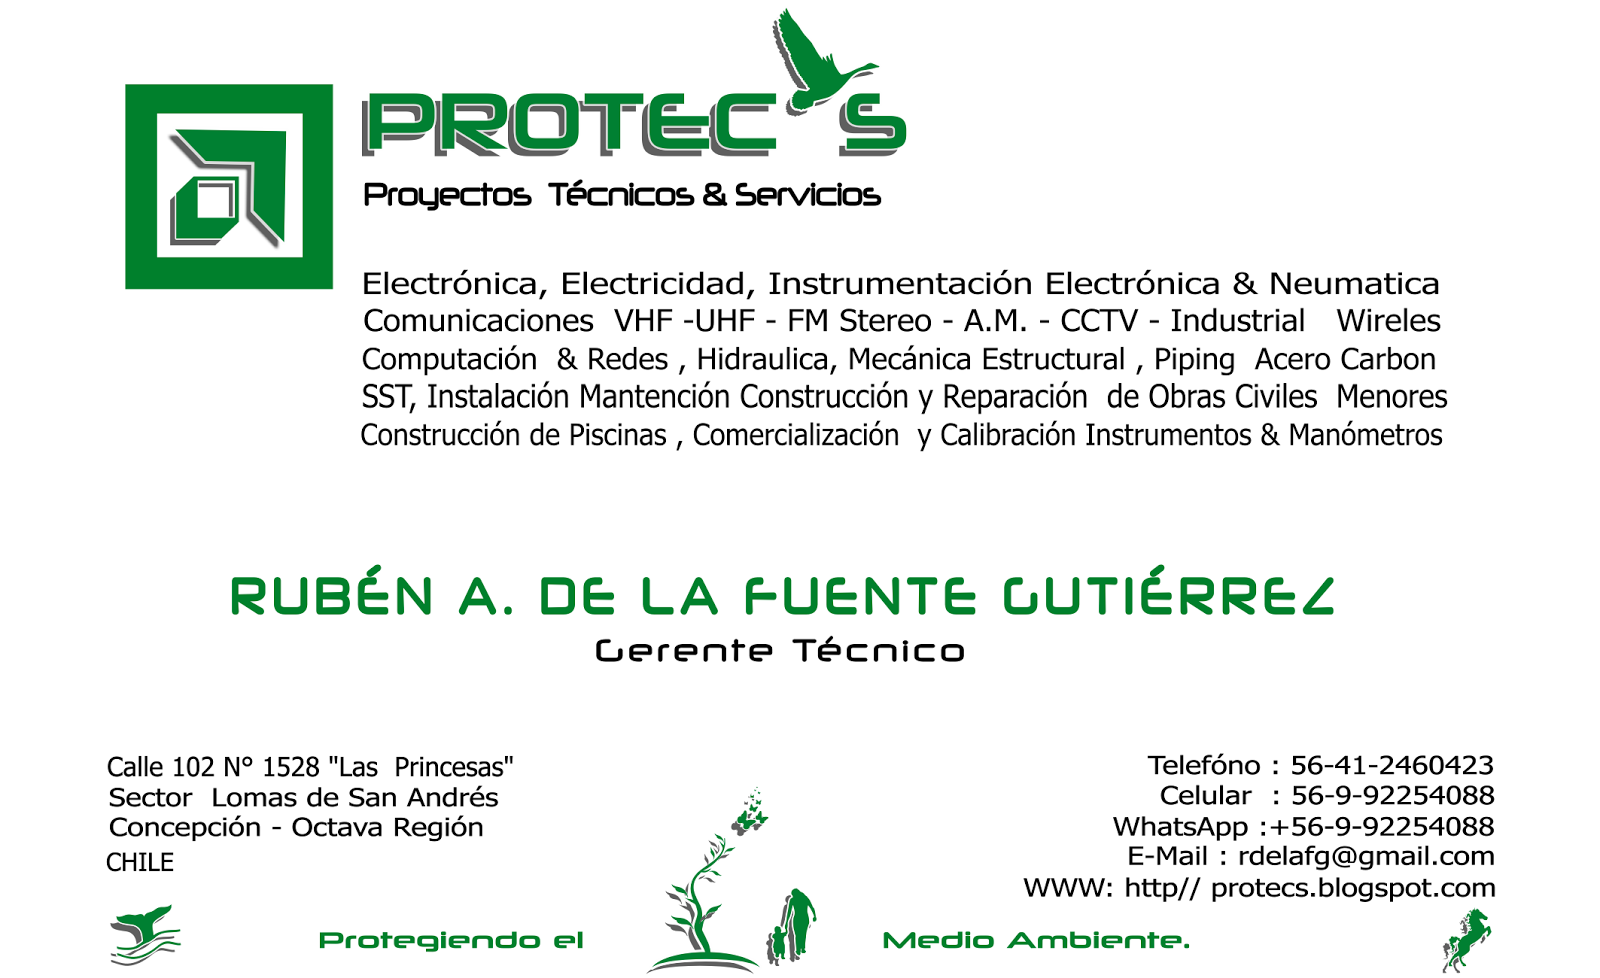 PROTECS (Proyectos Tecnicos Y Servicios)